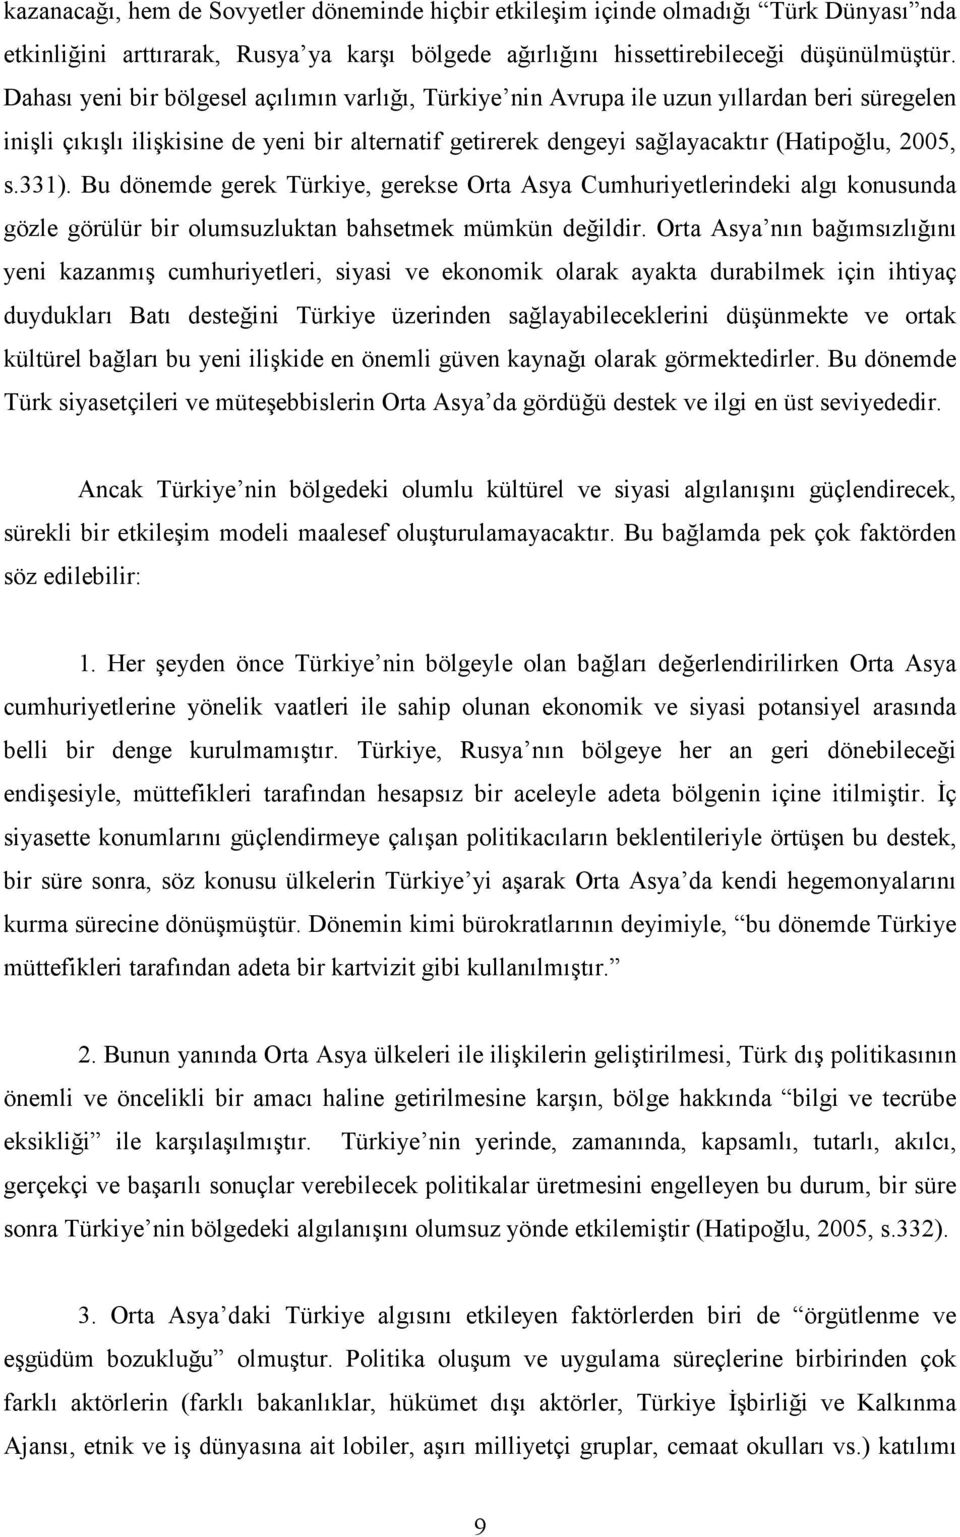 331). Bu dönemde gerek Türkiye, gerekse Orta Asya Cumhuriyetlerindeki algı konusunda gözle görülür bir olumsuzluktan bahsetmek mümkün değildir.